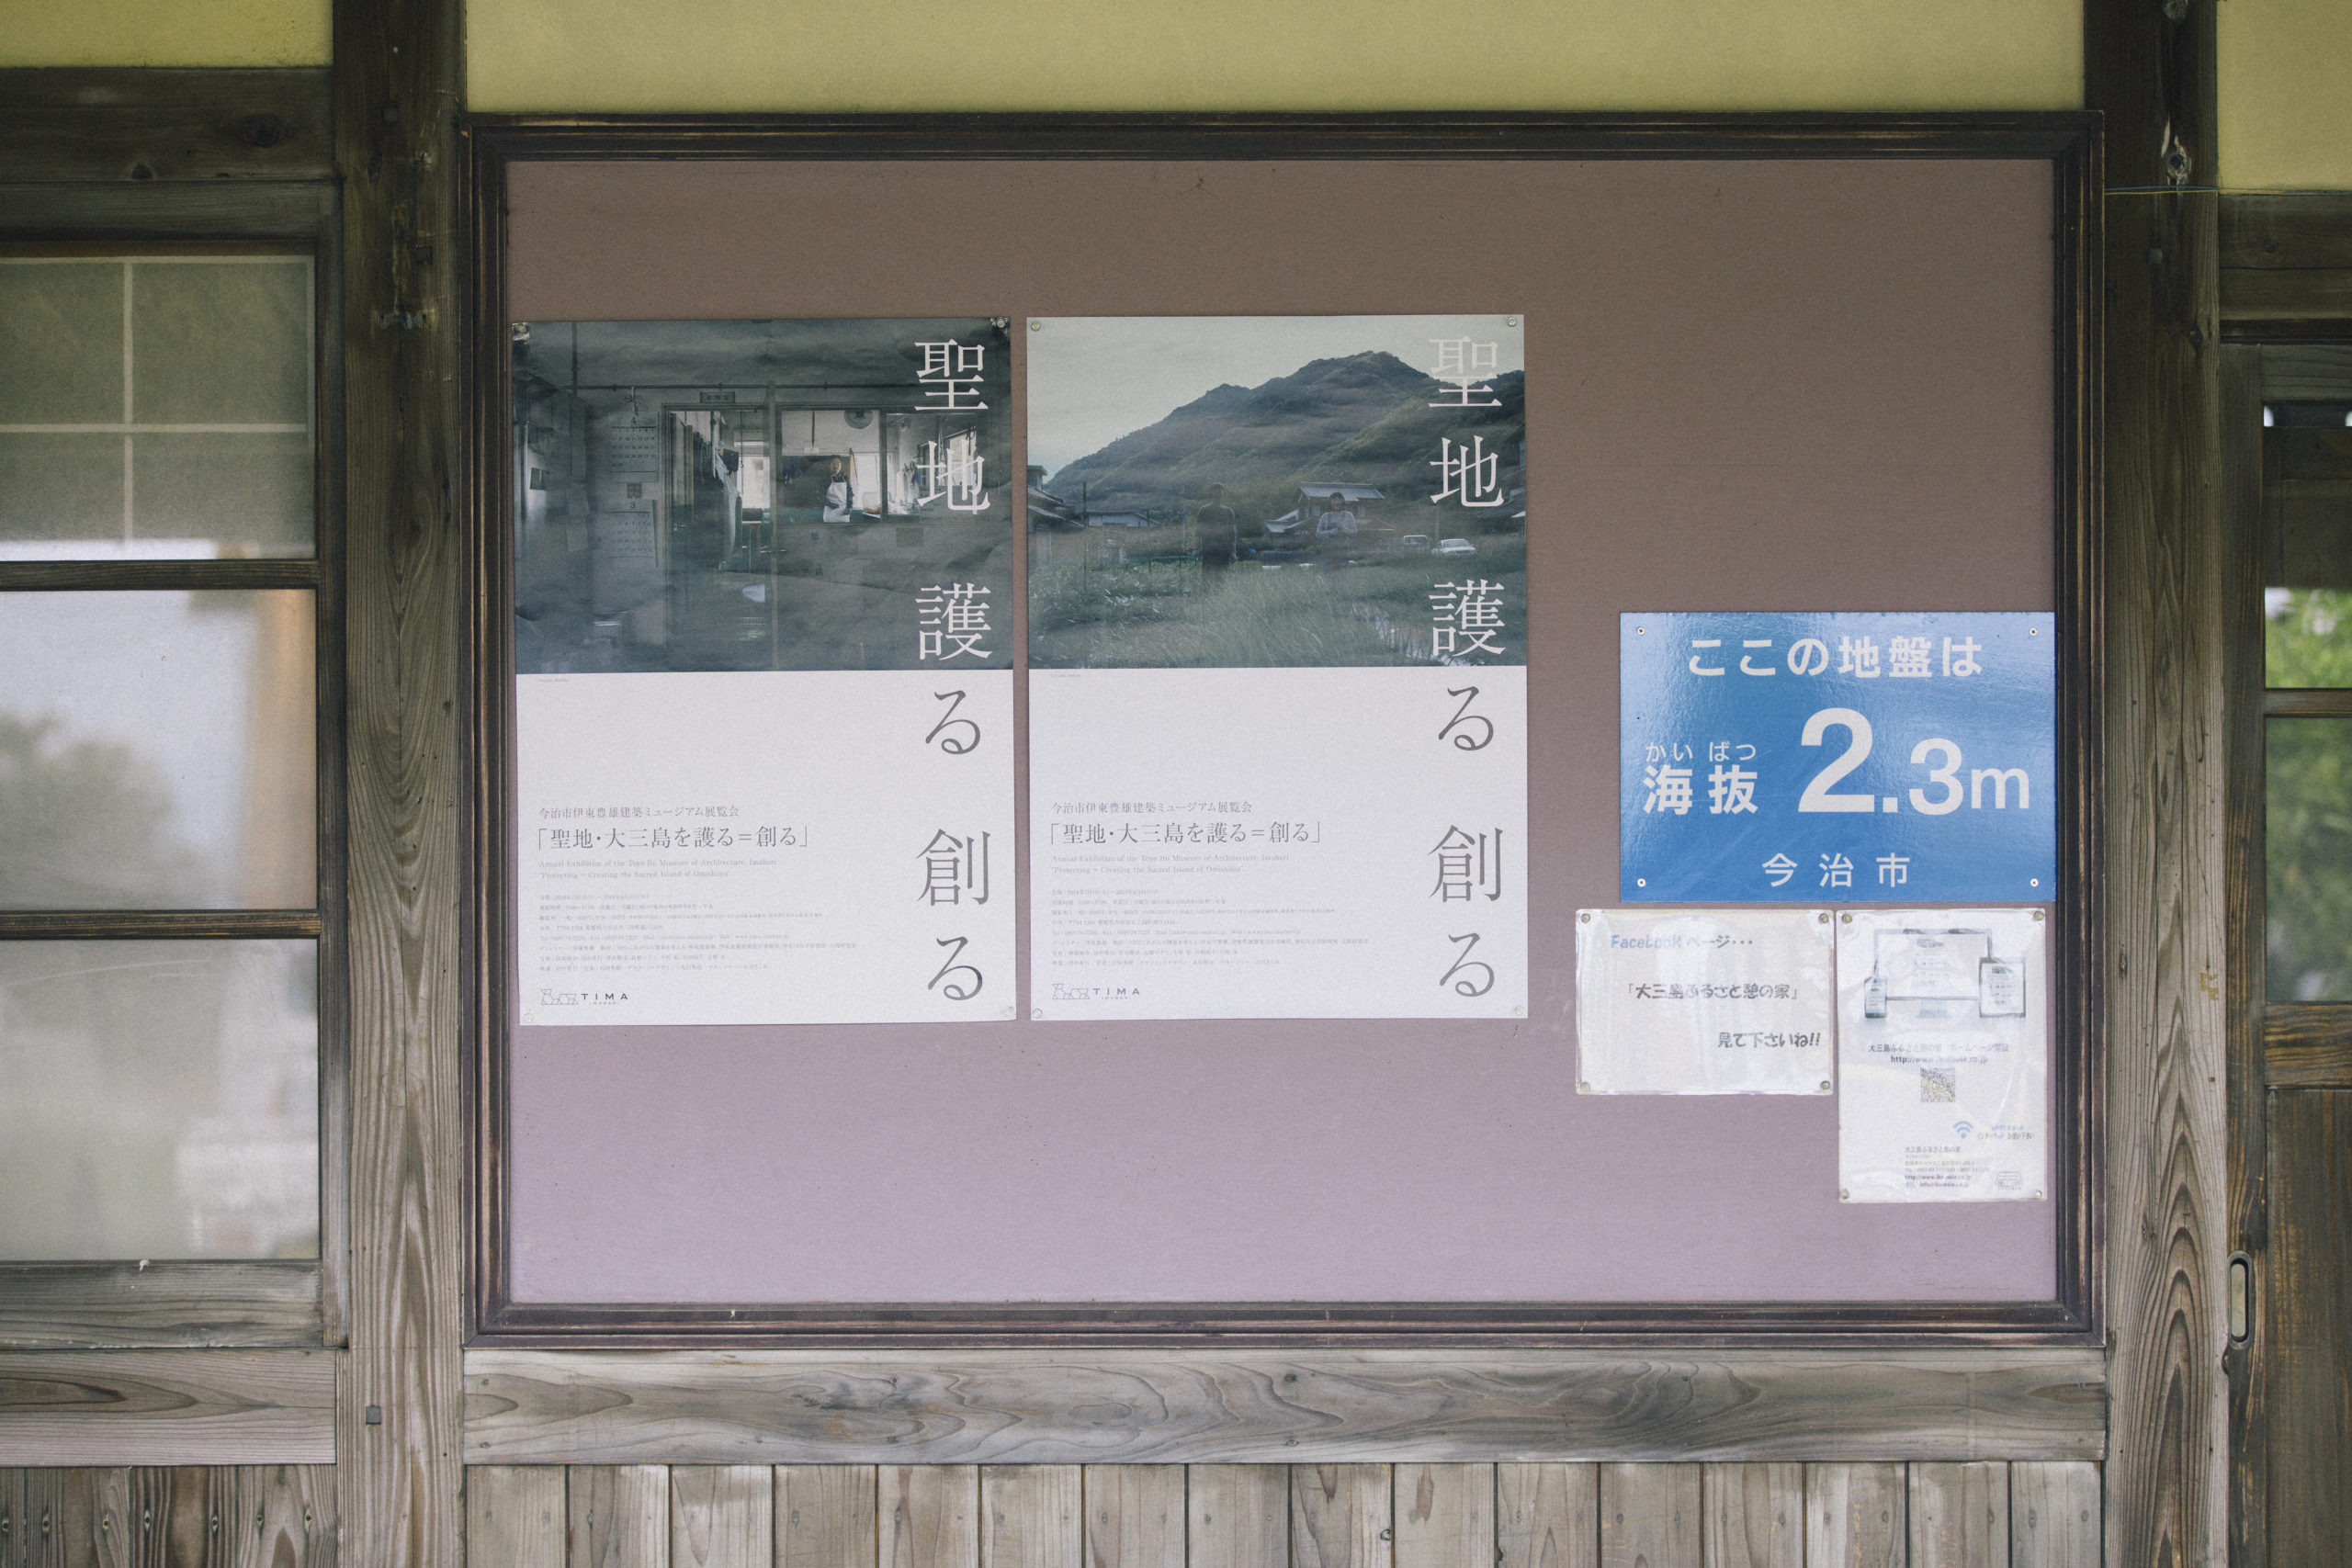 Toyo Ito Museum of Architecture, Imabari Exhibition 2018